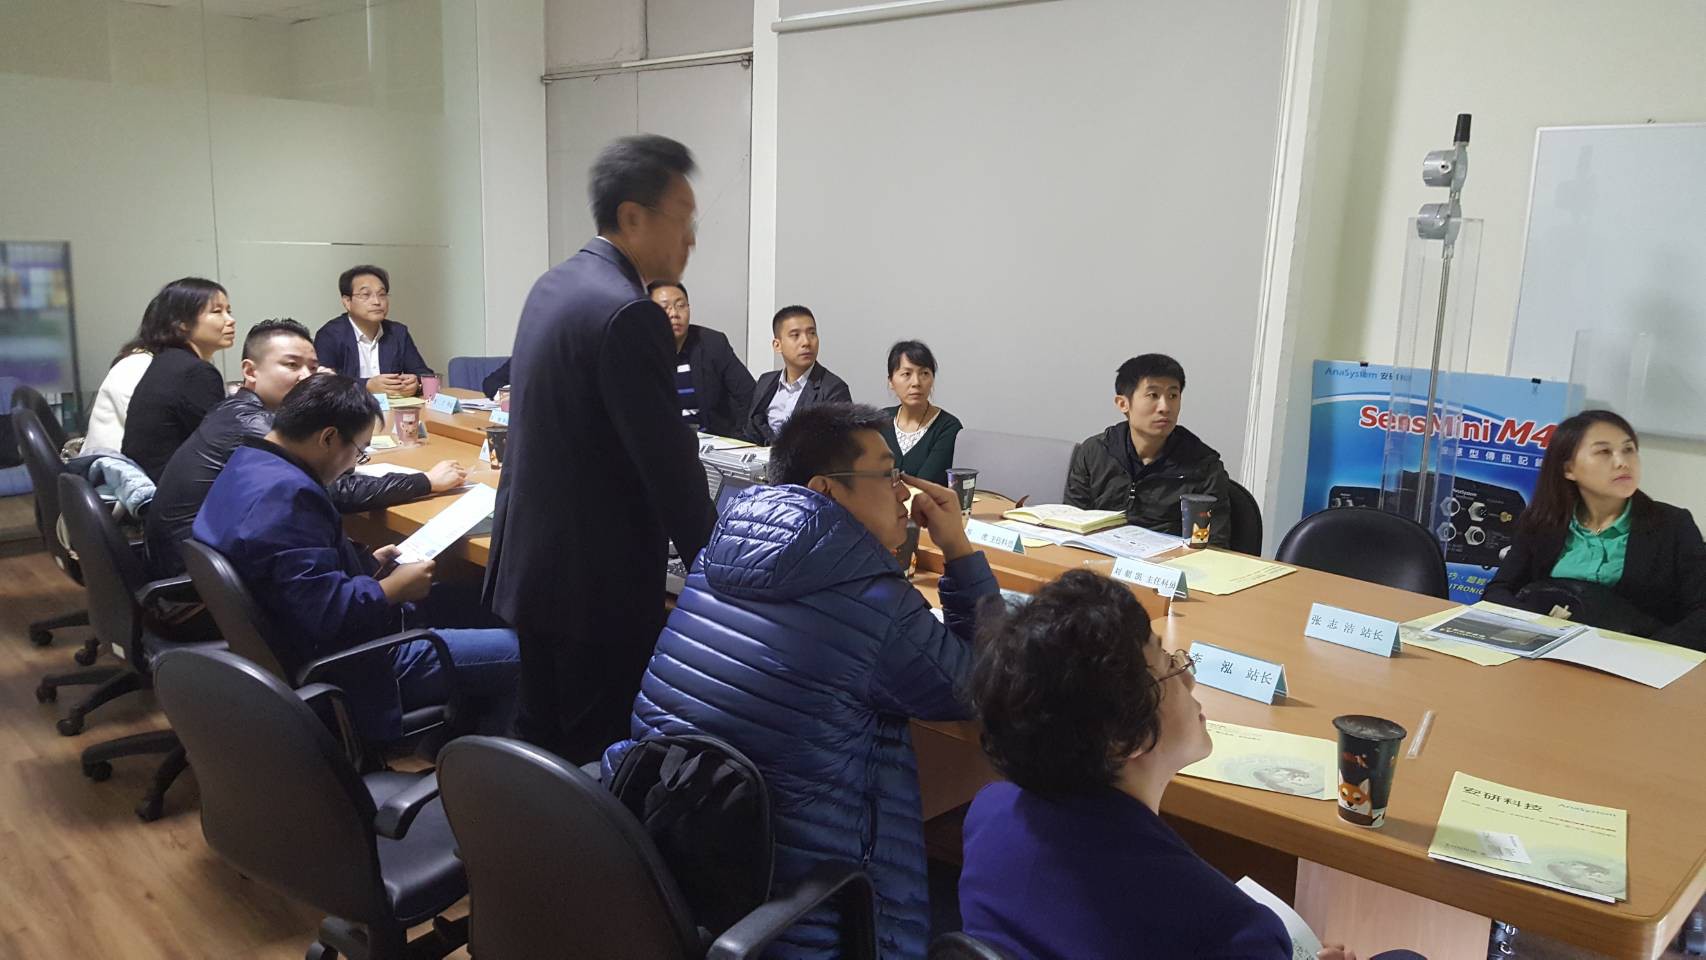 北京市朝陽區環境保護局冷春華副局長一行人拜訪安研科技